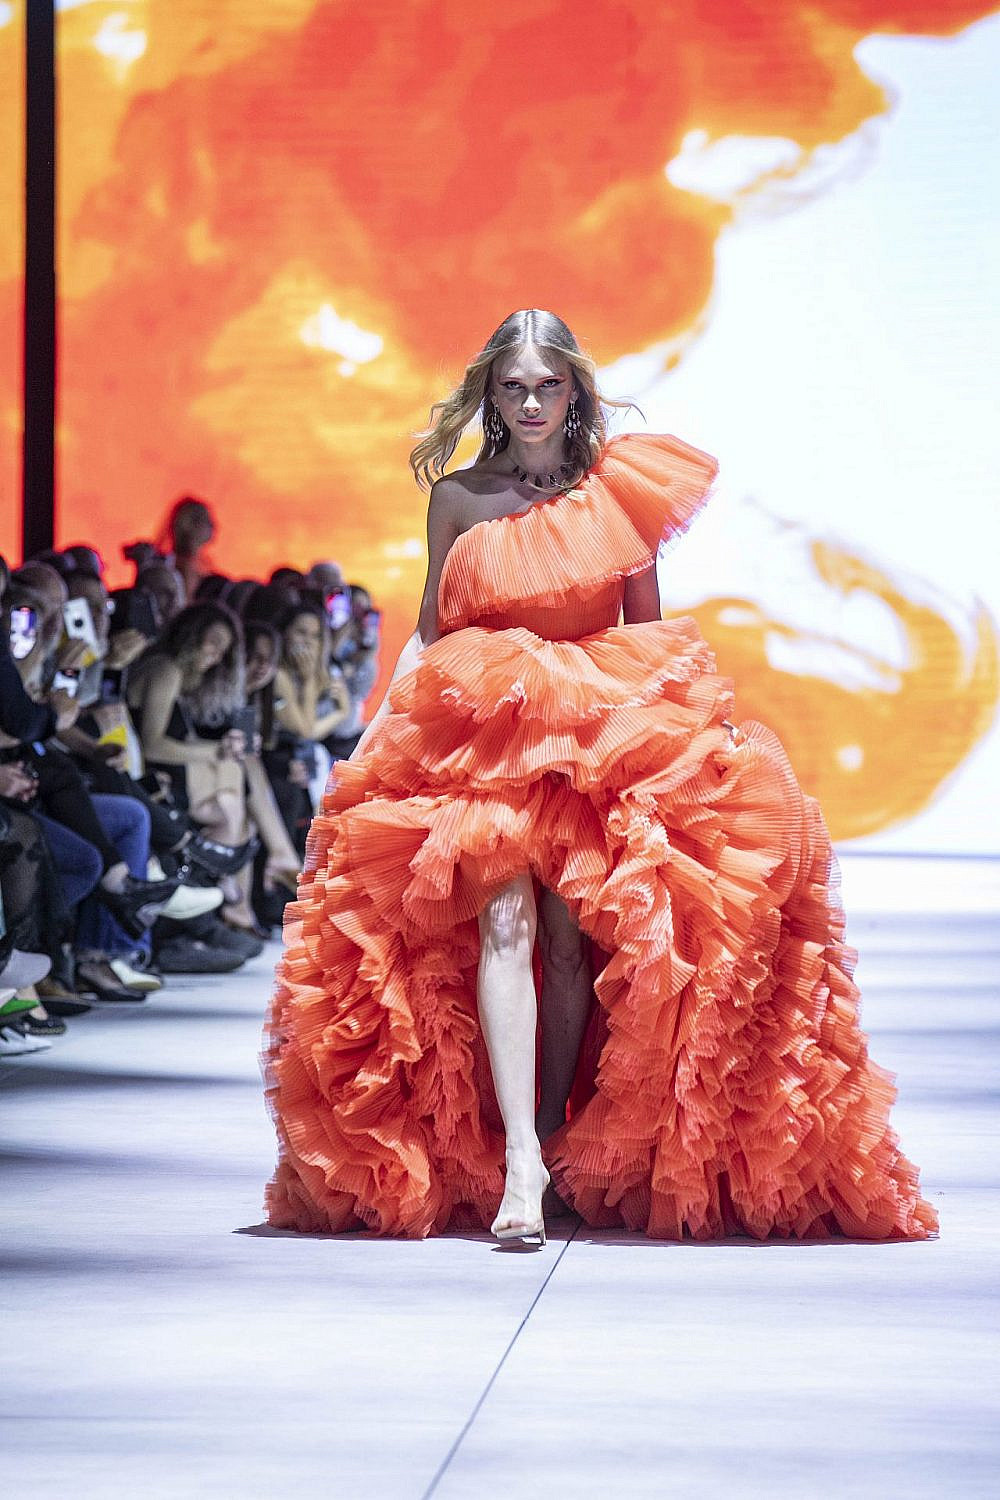 סתיו סטרשקו בשמלה של דילן פריינטה, בתצוגה של רונית רפאל | צילום: לנס הפקות